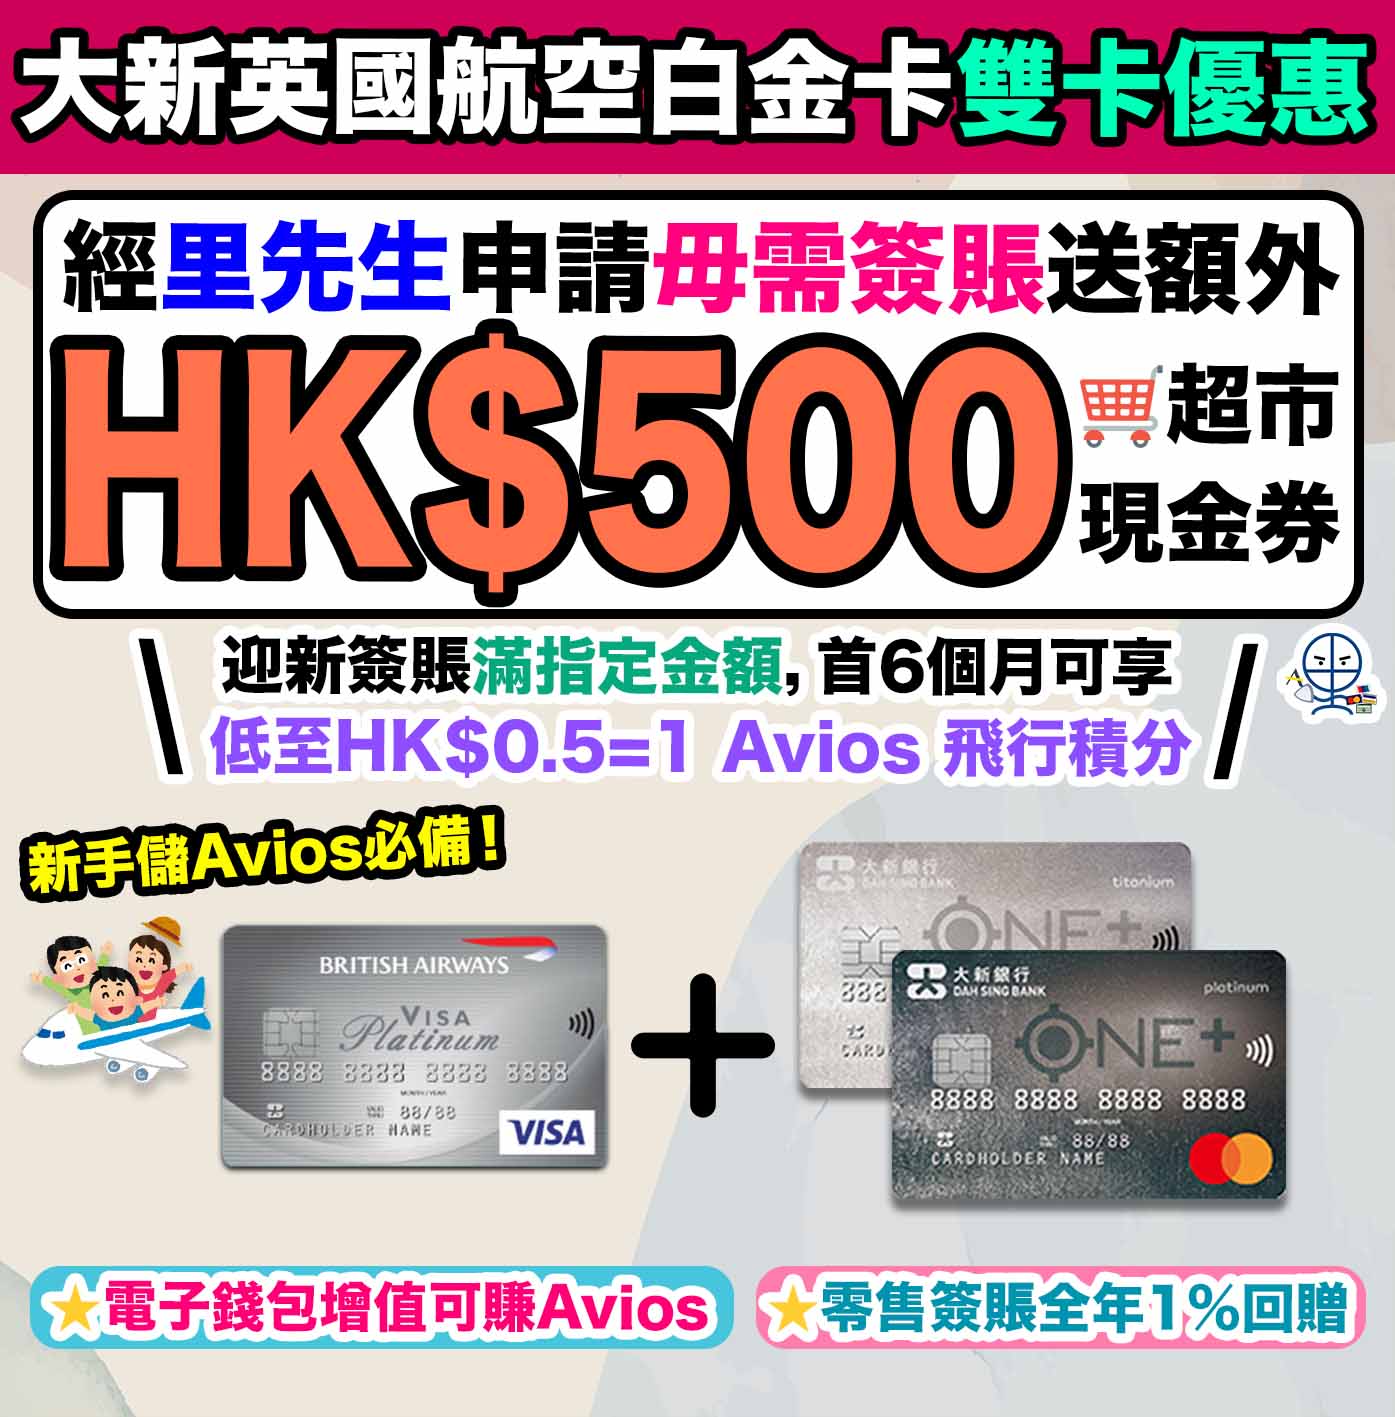 【大新信用卡優惠】本地簽賬獎賞賺HK$360現金回贈 仲可以抽獎 大獎為簽賬100%現金回贈！